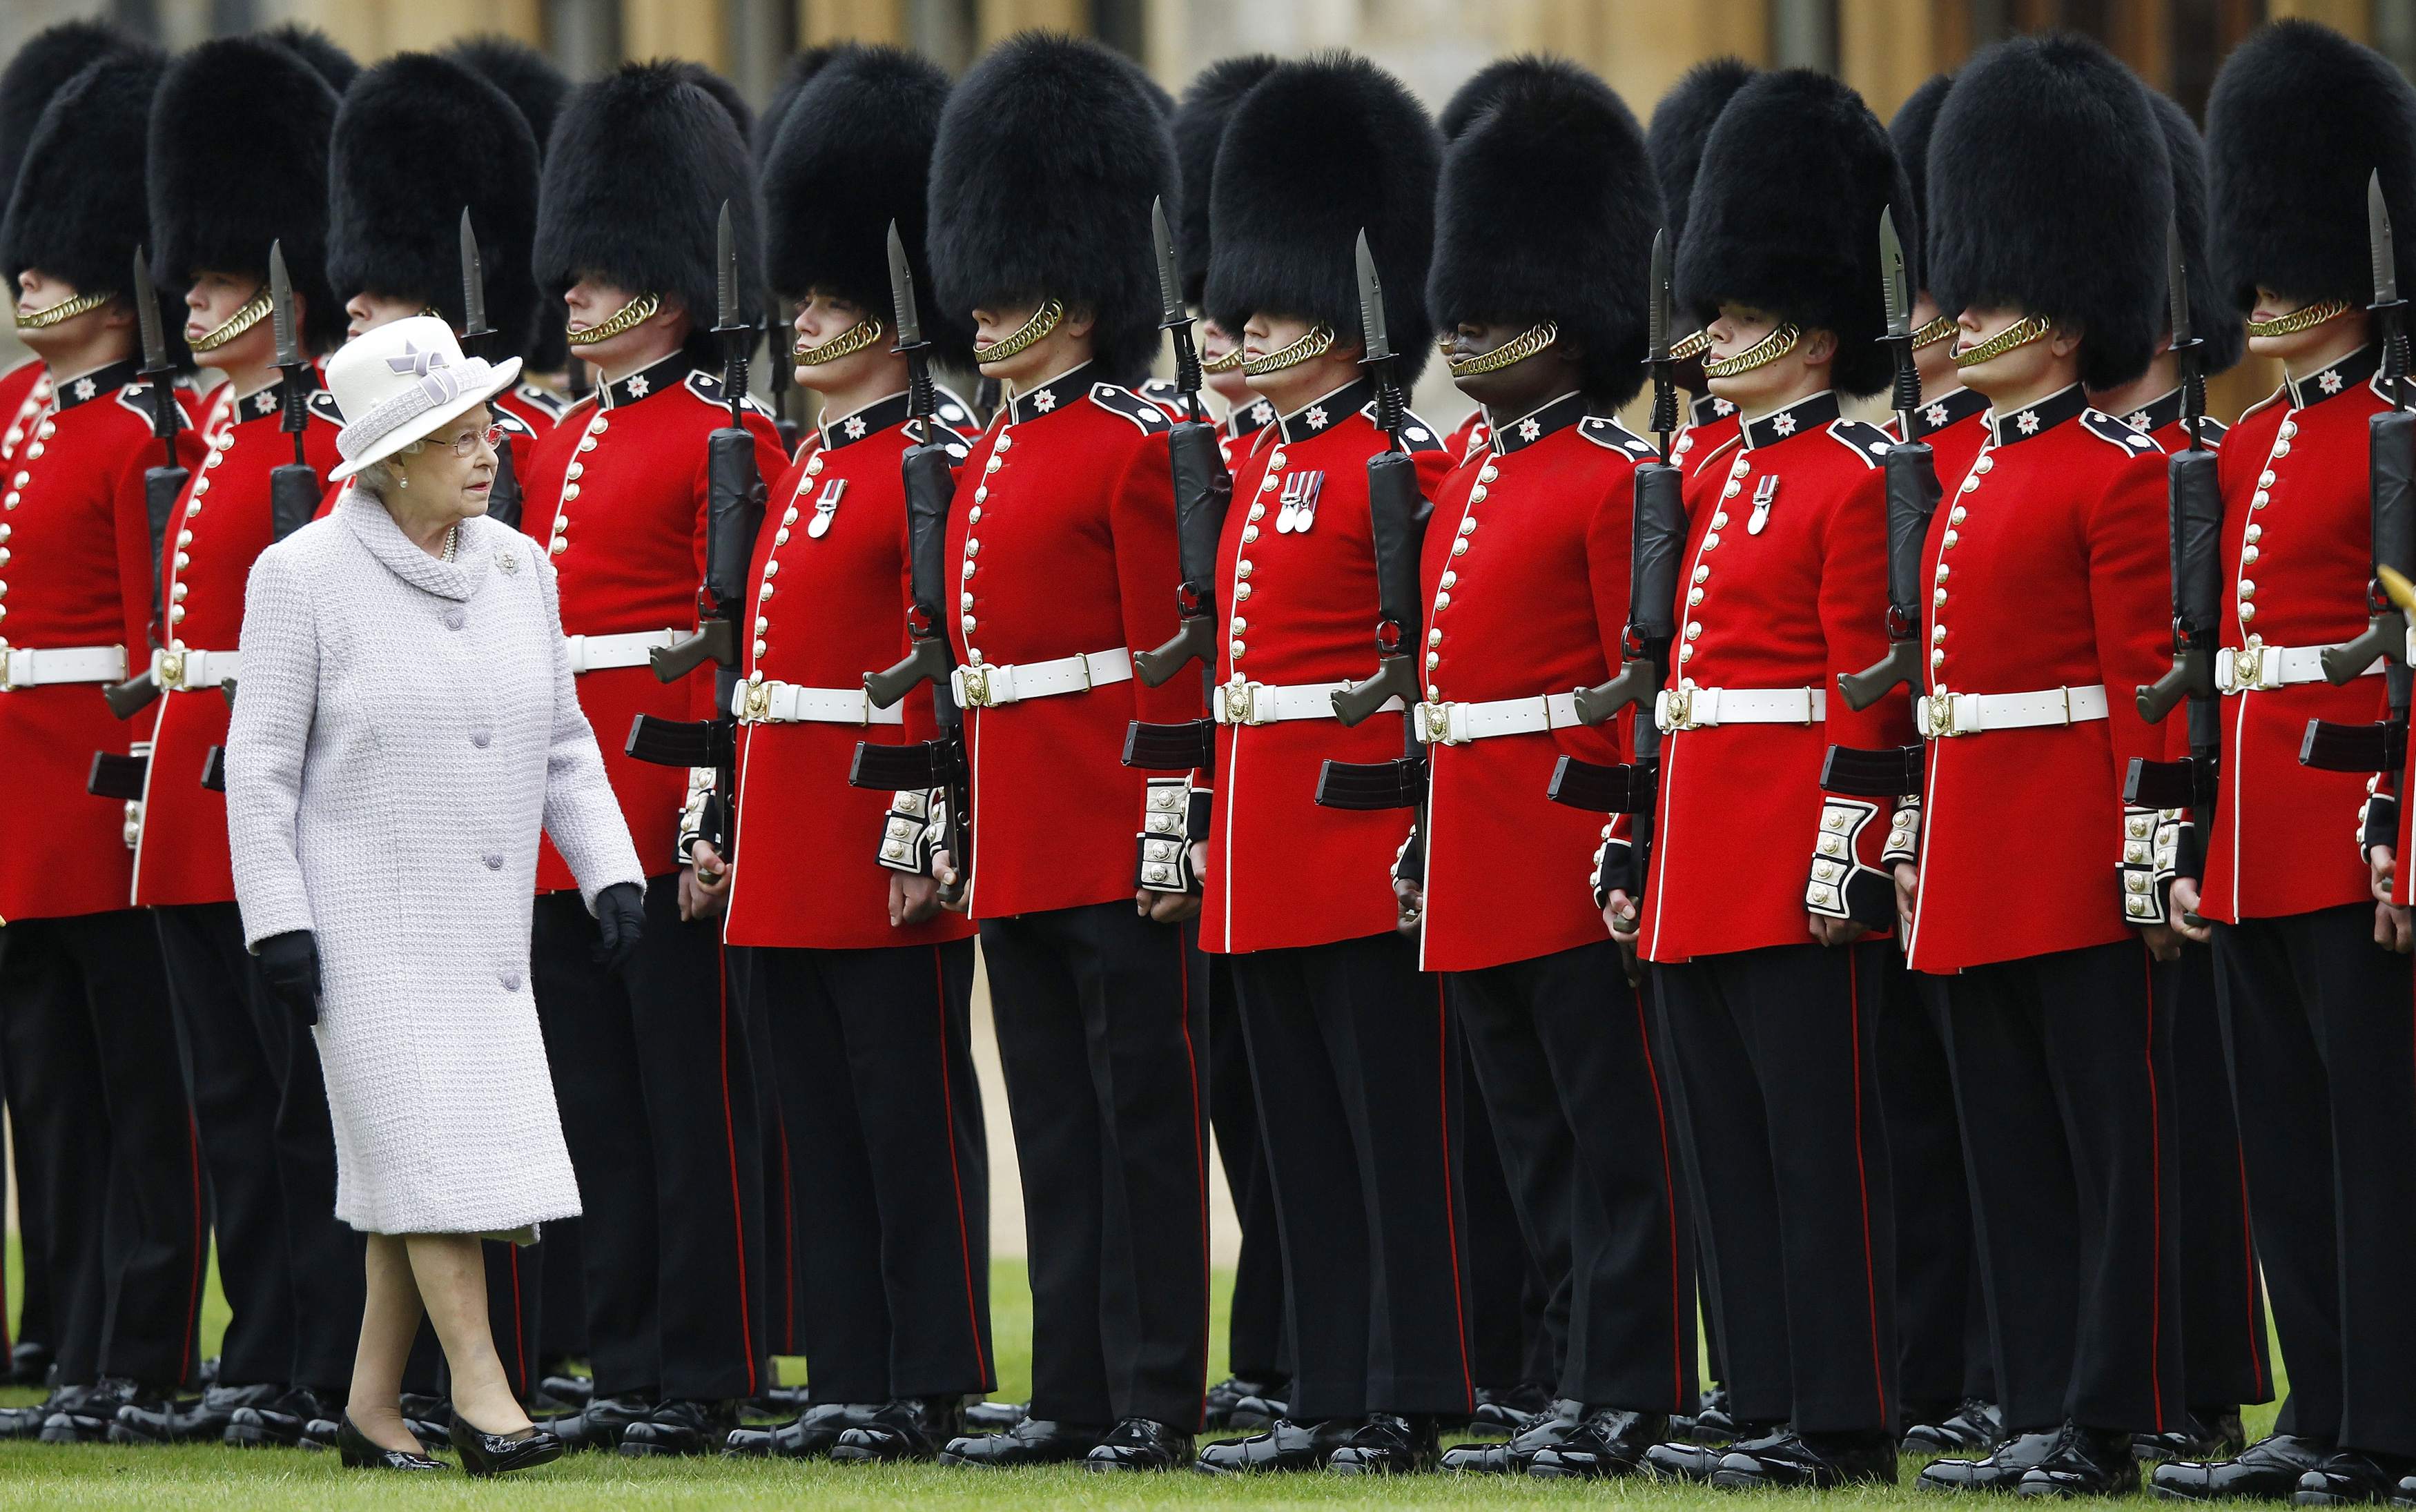 Queen-Elizabeth-II-inspects-guards.jpg